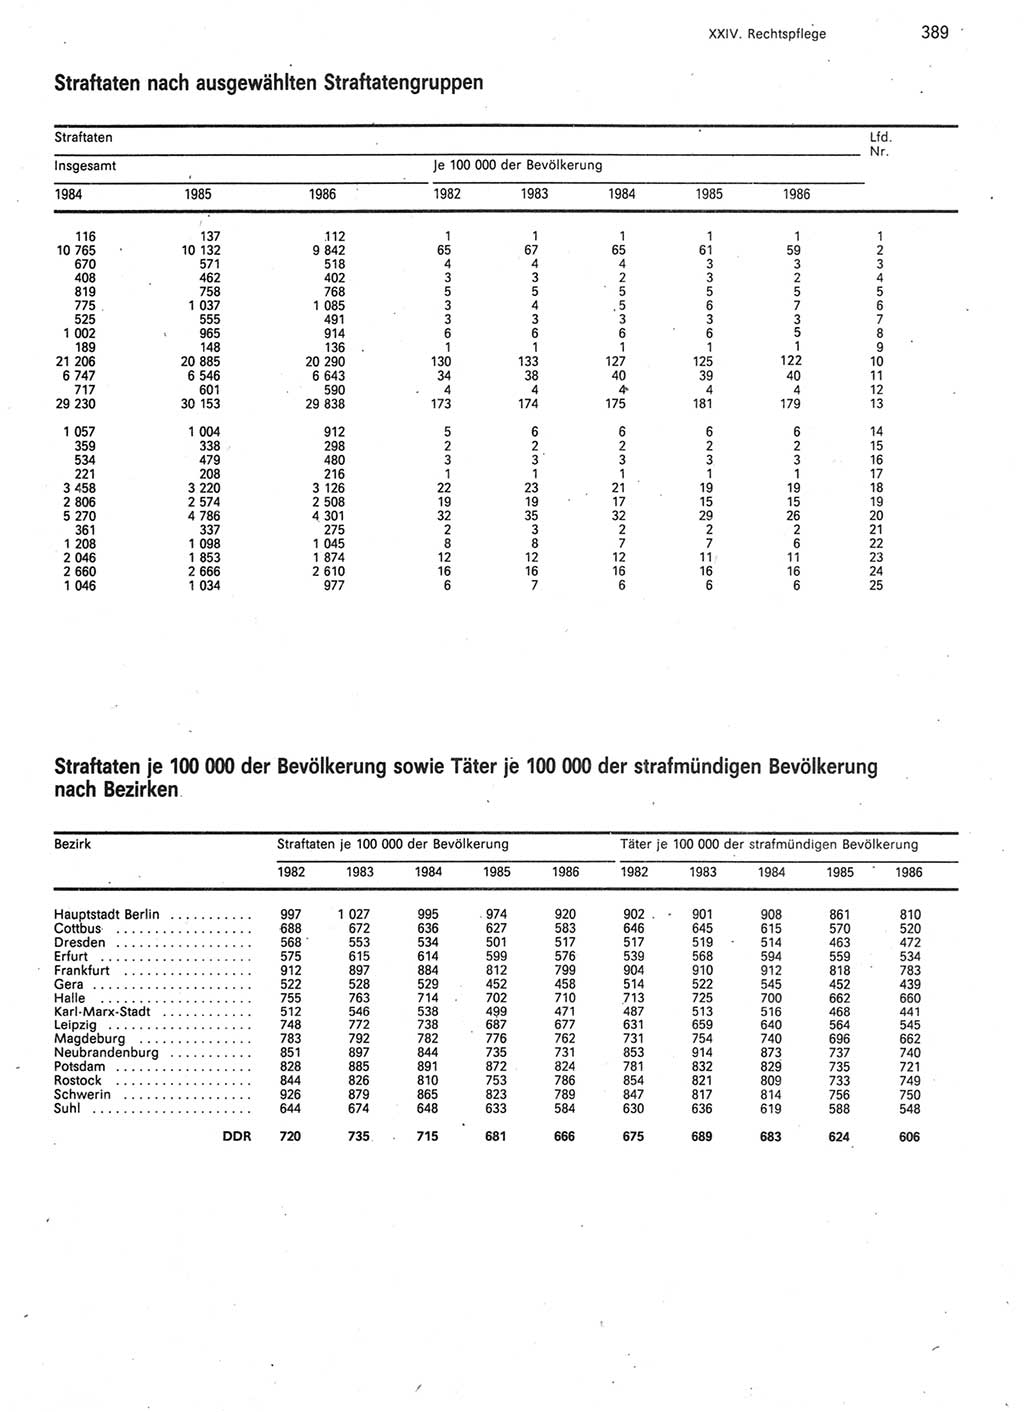 Statistisches Jahrbuch der Deutschen Demokratischen Republik (DDR) 1987, Seite 389 (Stat. Jb. DDR 1987, S. 389)